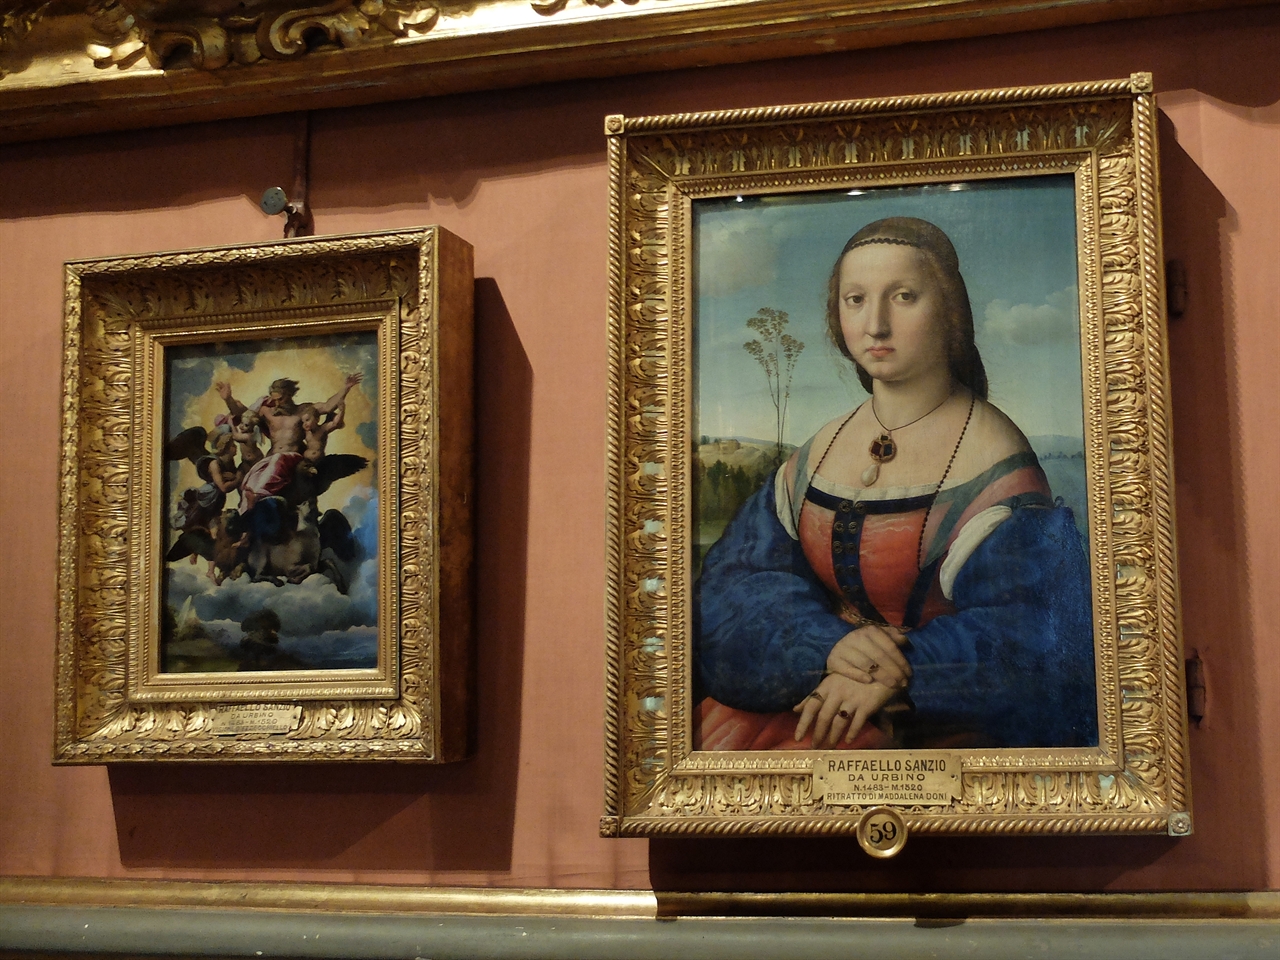 라파엘로 '도니 부인의 초상', '에스겔의 비전', 피렌체 팔라티나미술관. 한 자리에서 라파엘로의 명작들을 여러 편 만날 수 있는 것도 팔라티나 미술관의 매력입니다. 